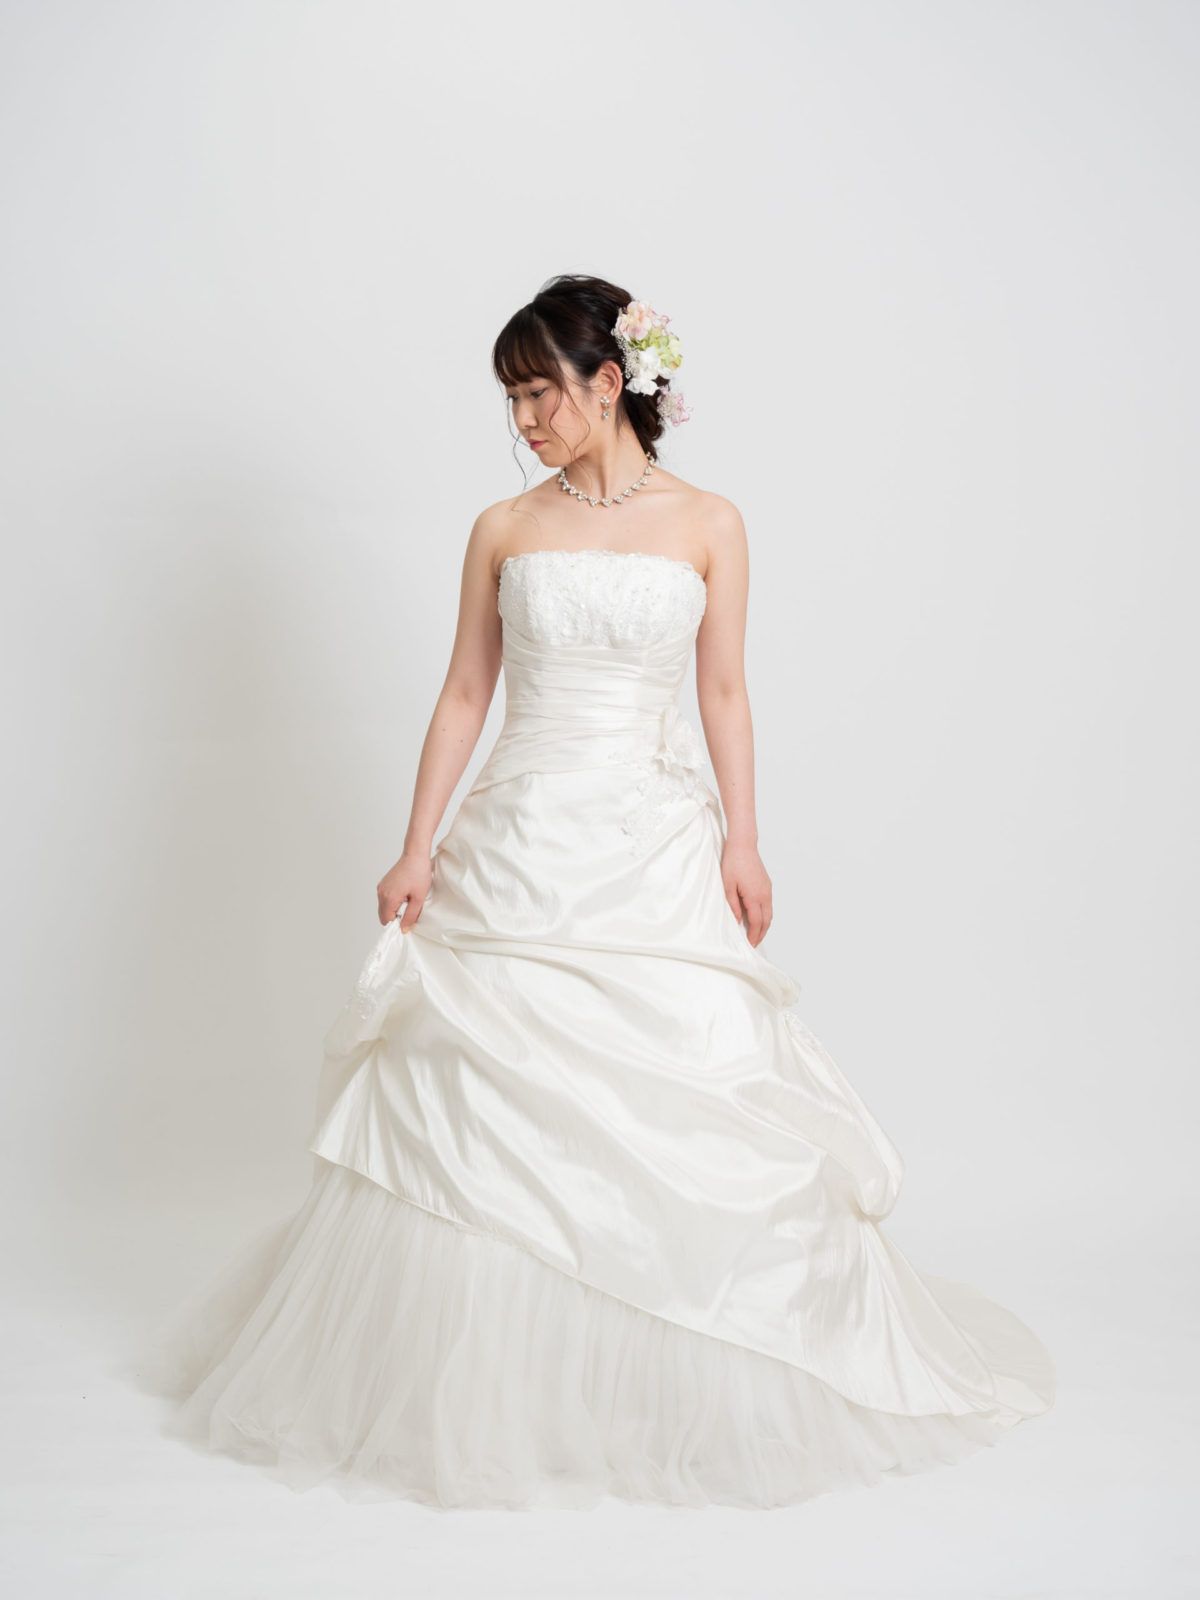 Weddingdress_041 | ウェディングドレス・カラードレスの格安レンタル | 福岡・九州でフォトウェディング・前撮りなら